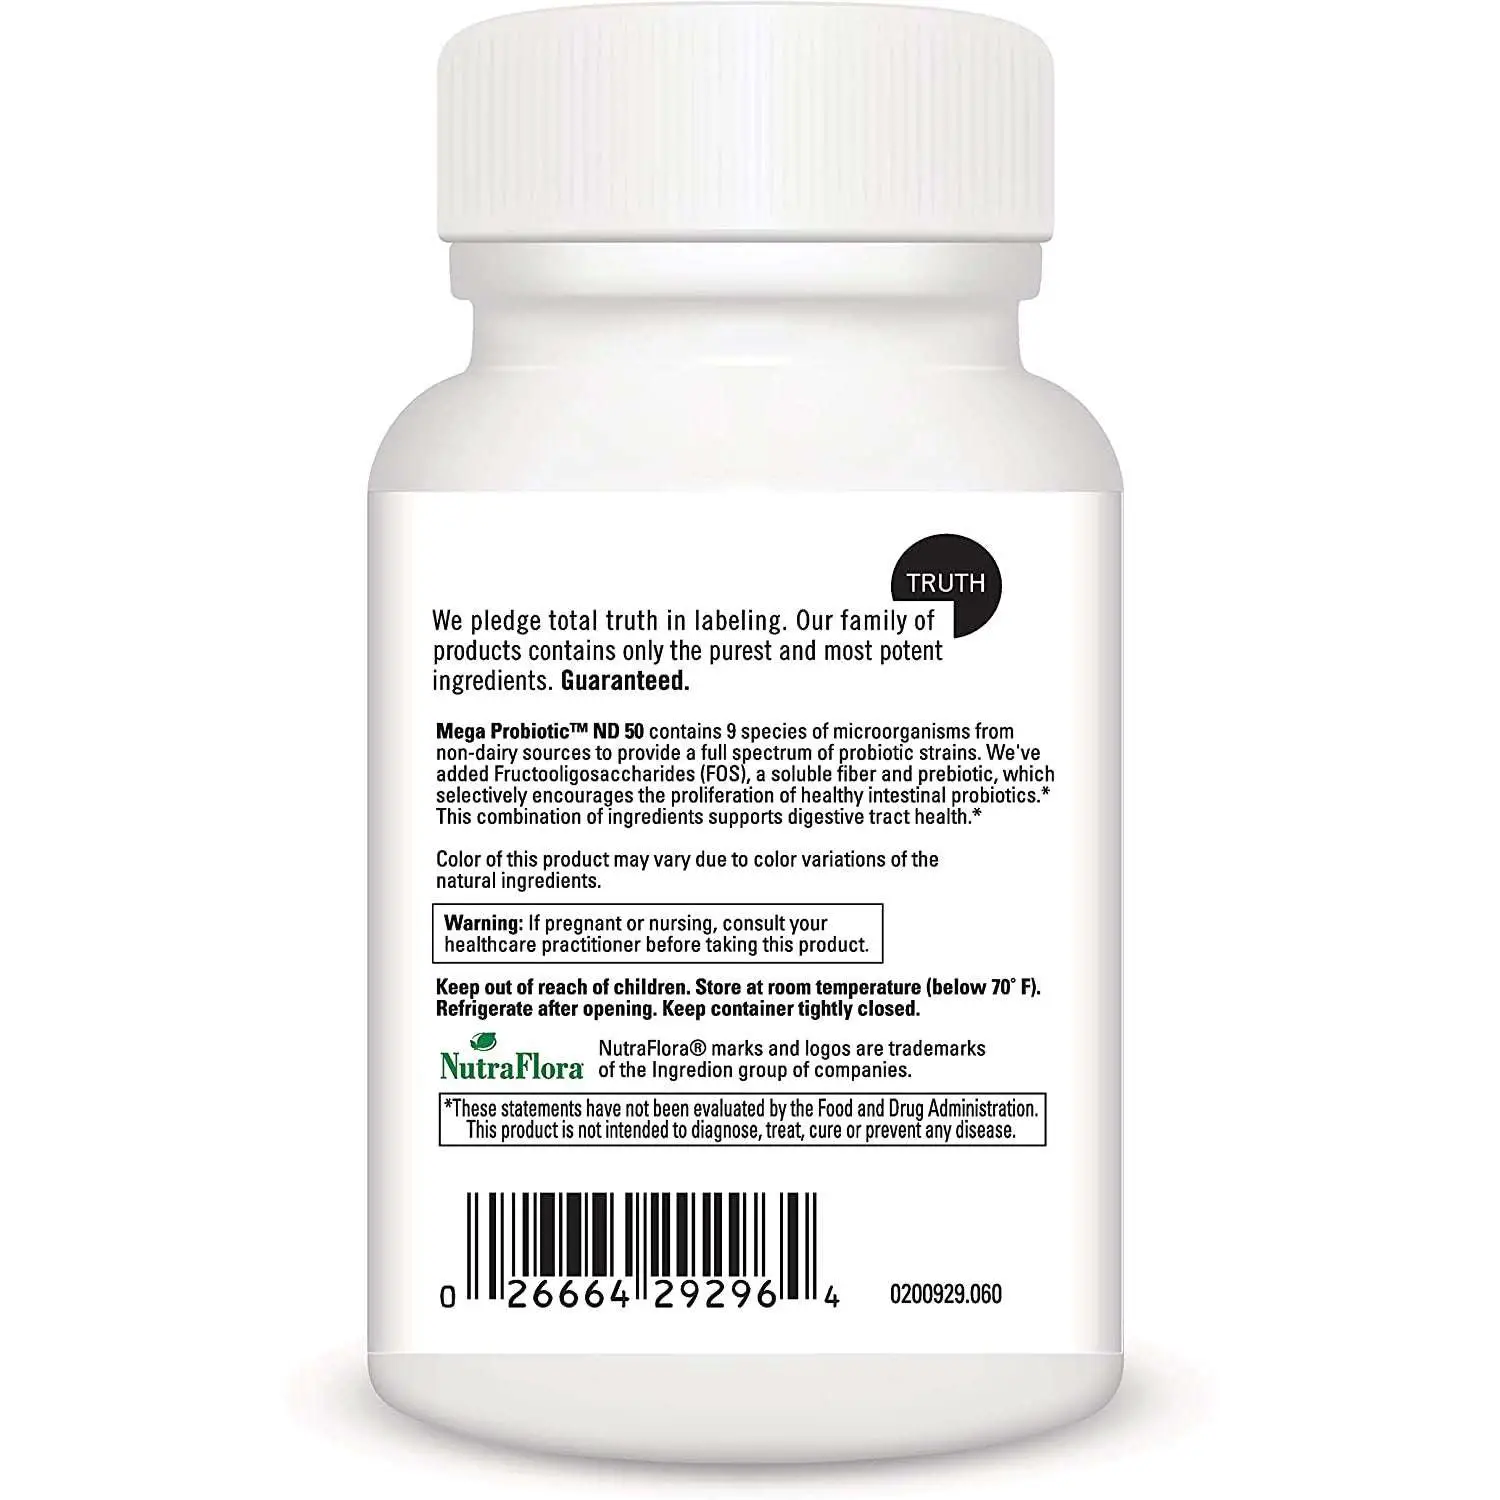 DaVinci Labs Mega Probiotic ND 50 60 Capsules